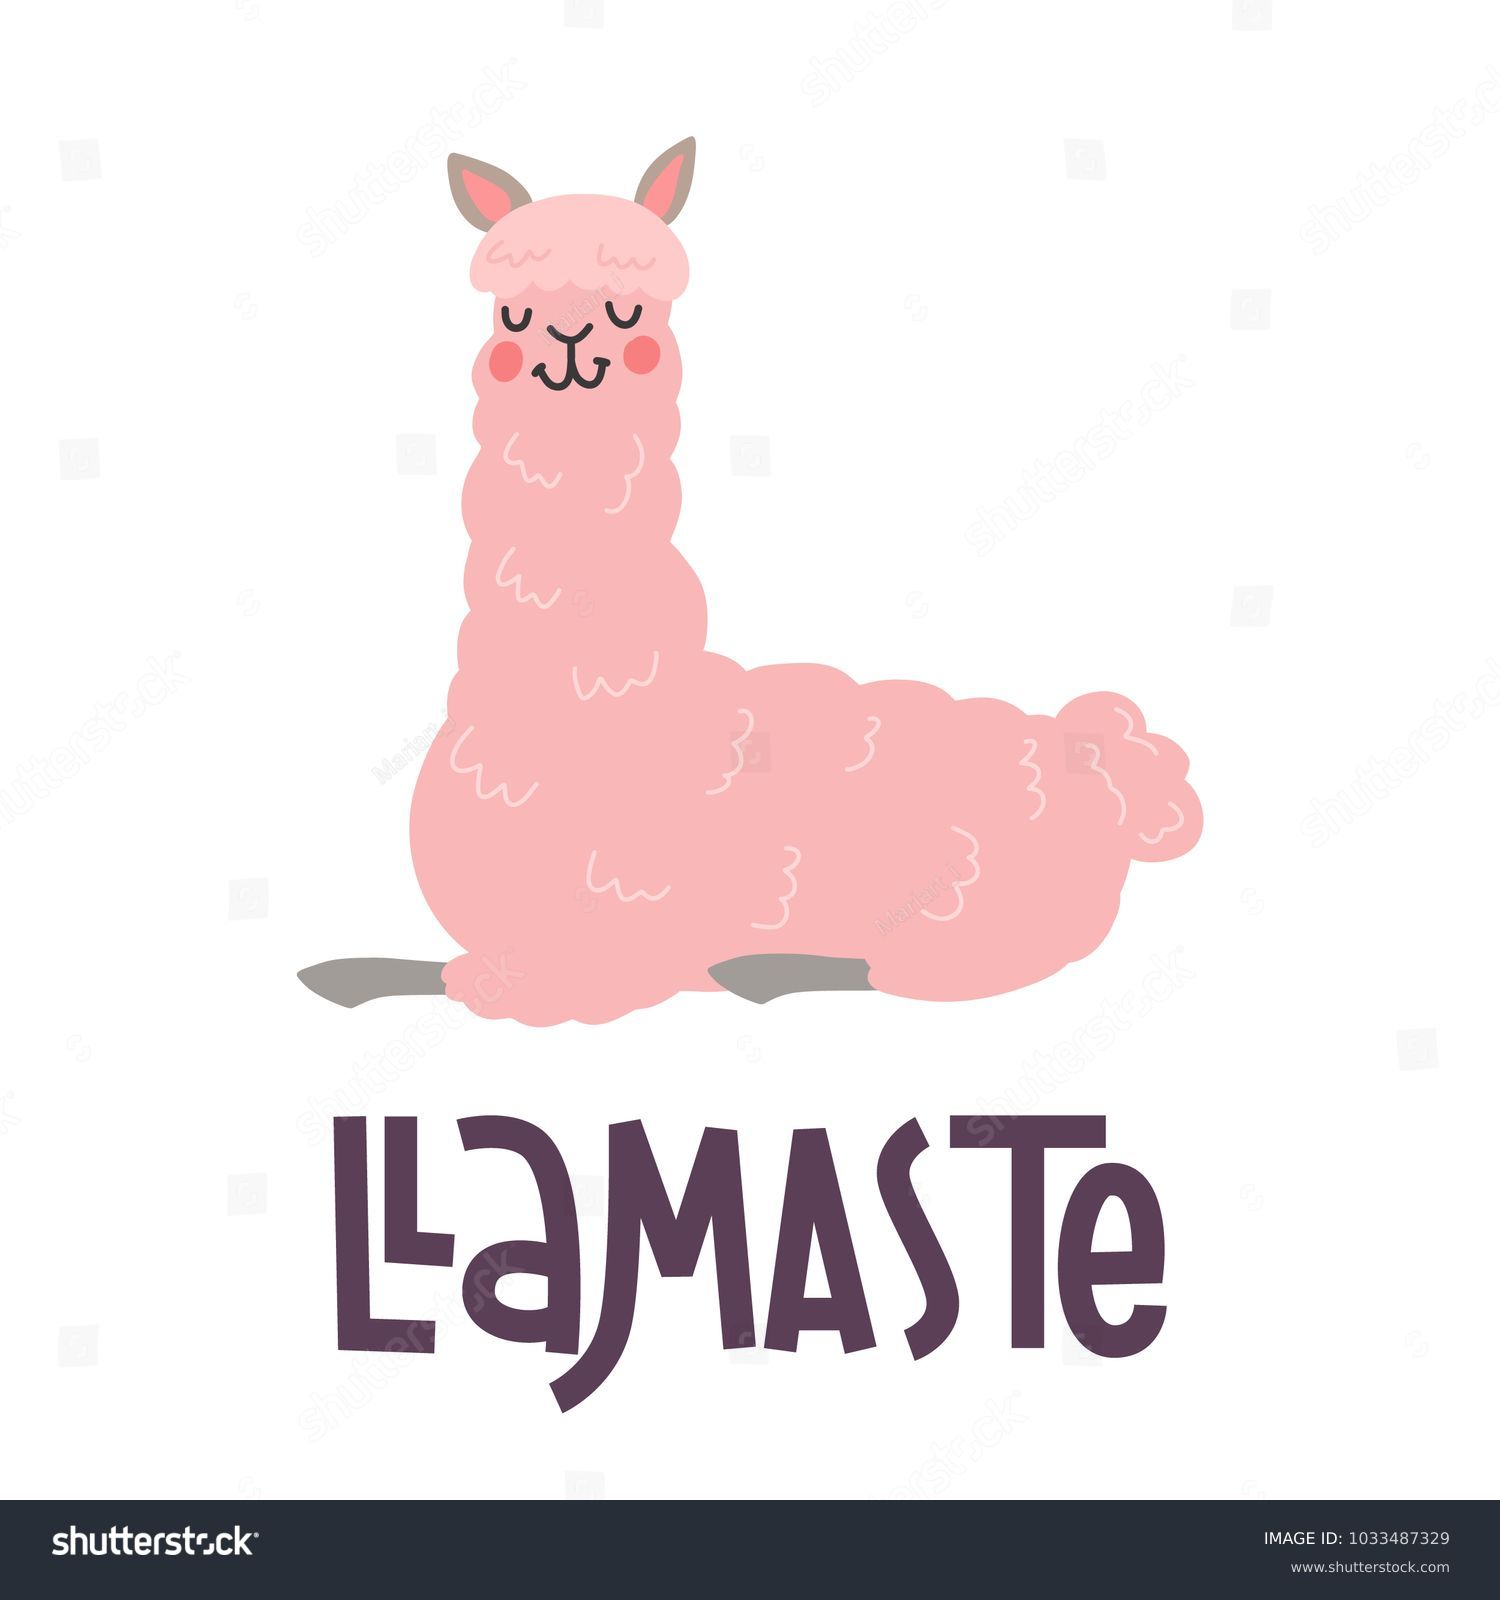 Cute Llamas Alpaca Hand Drawn Cartoon Stock Vector Royalty Free 1033487329 Shutterstock 1521